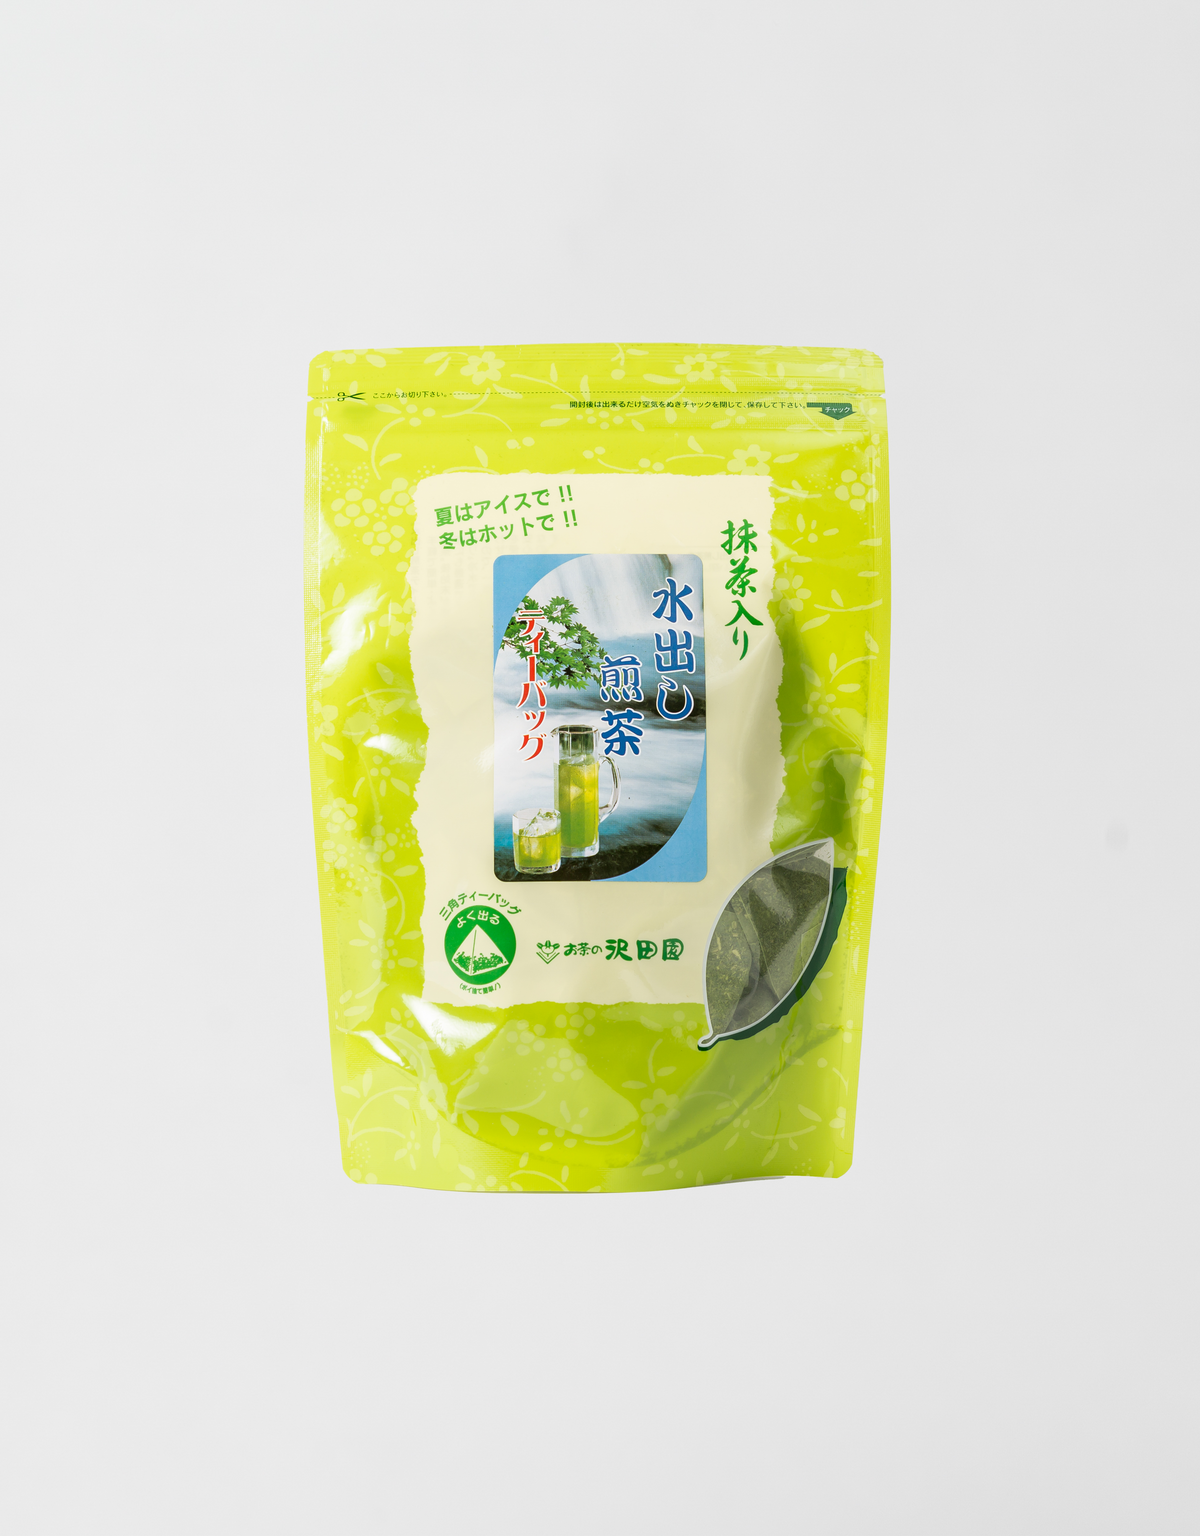 【delicious! ] Matcha green tea with cold brew Sencha tea bag [5g x 50P]